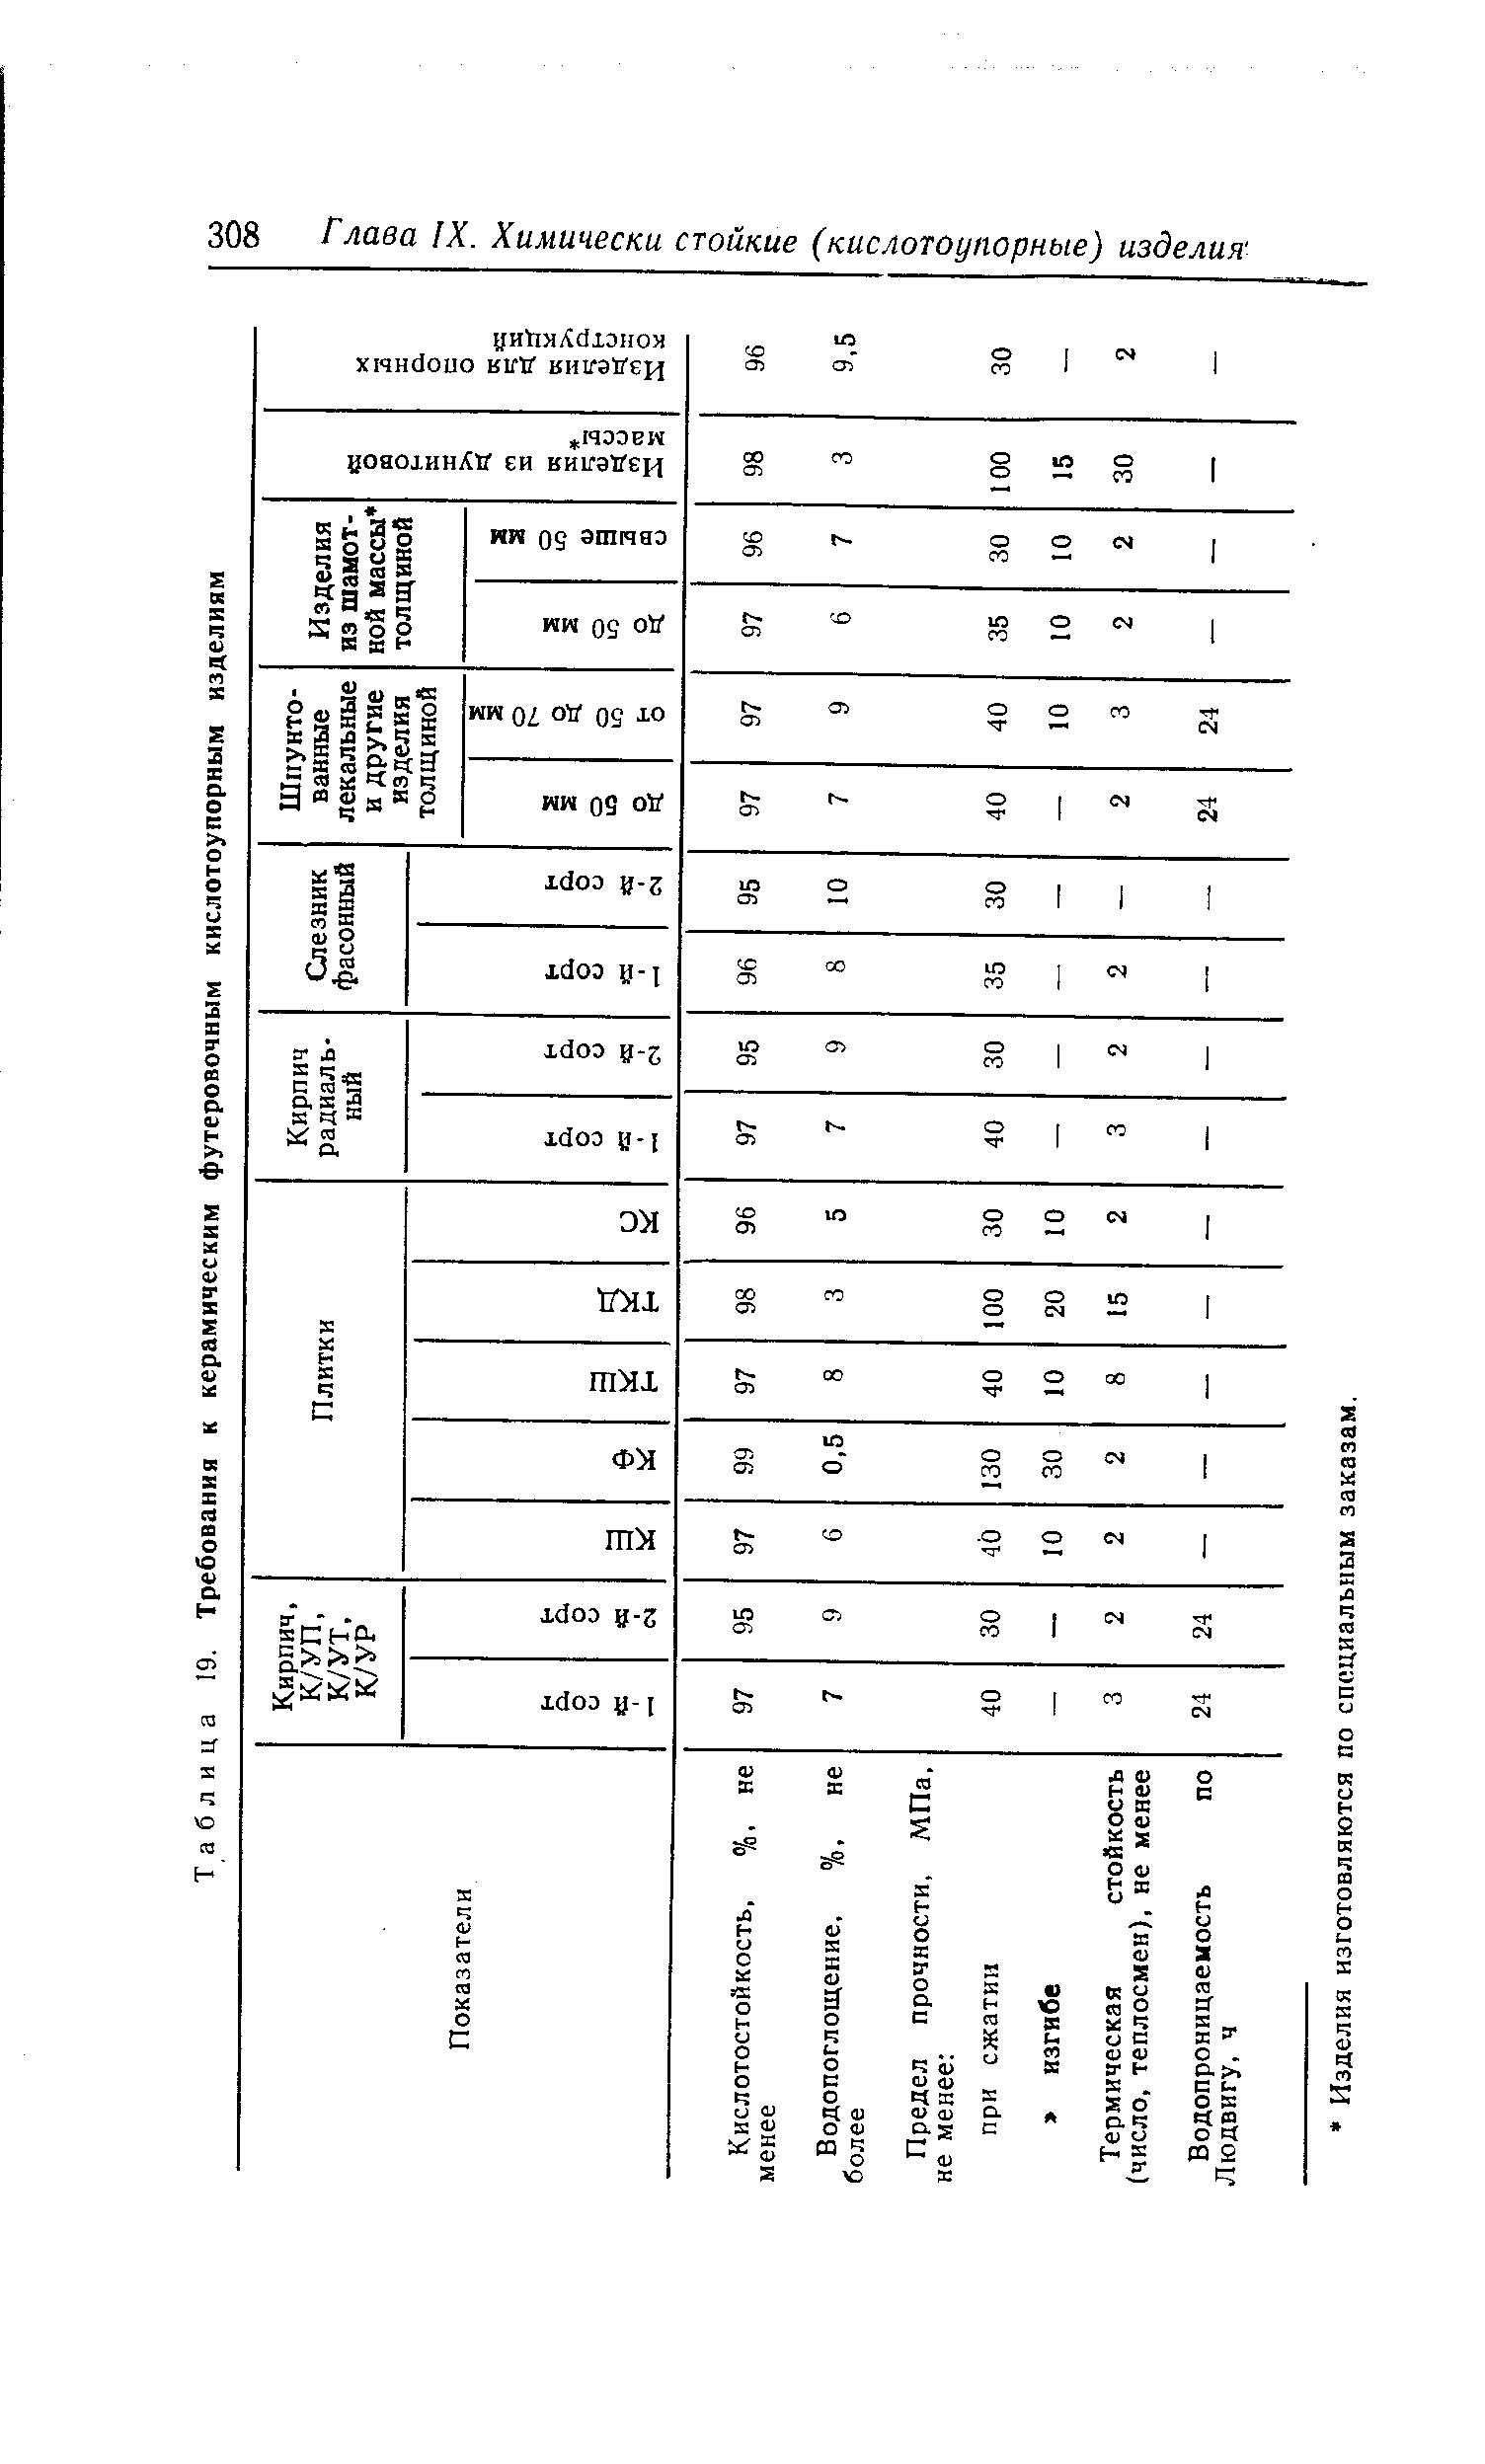 Таблица 19. Требования к керамическим футеровочным кислотоупорным изделиям
